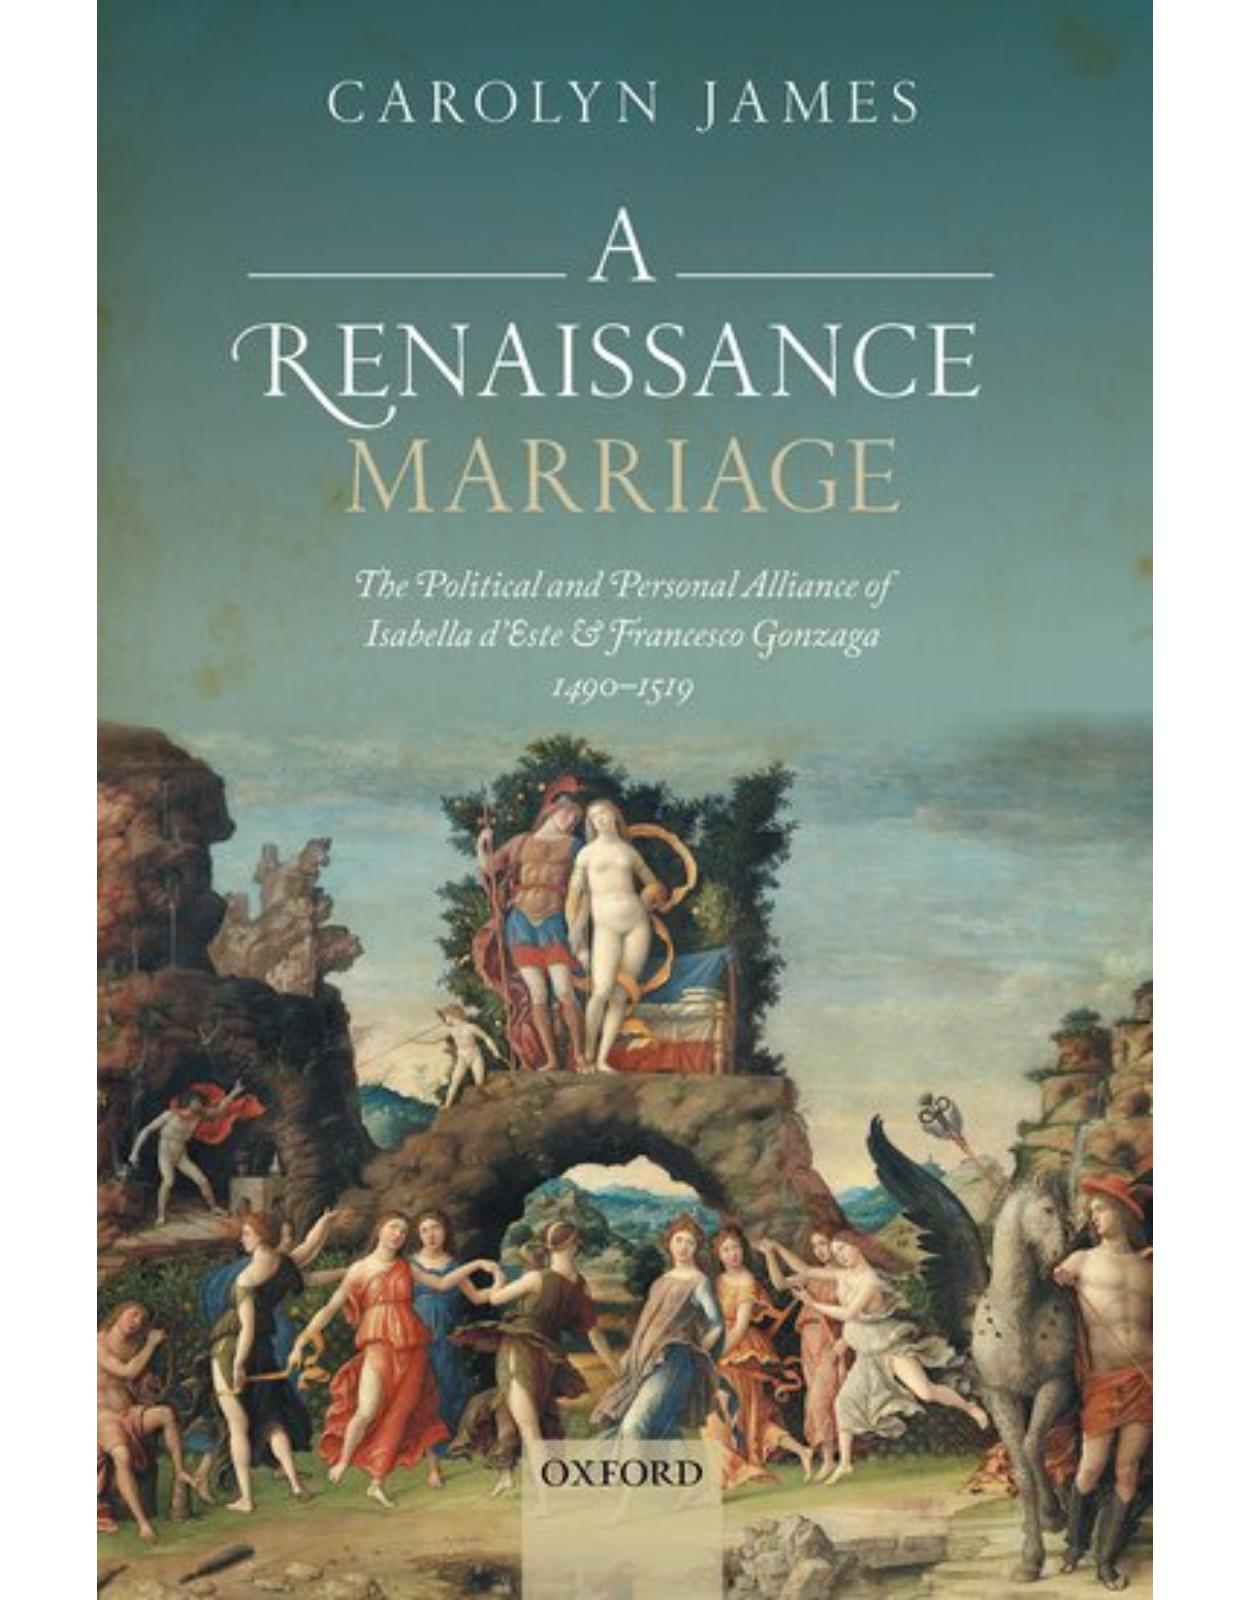 A Renaissance Marriage